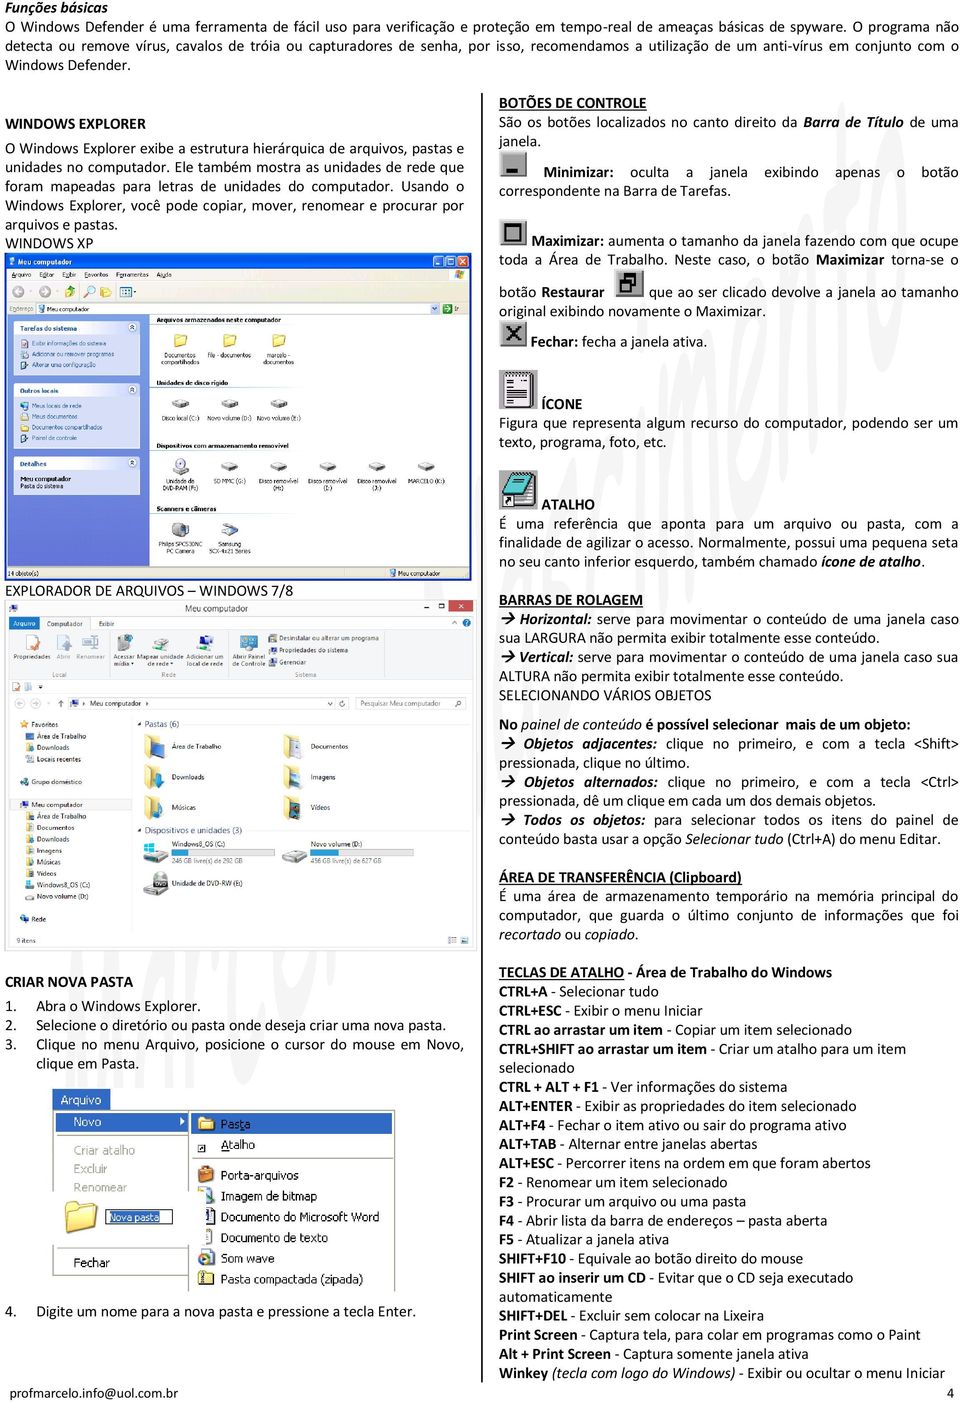 WINDOWS EXPLORER O Windows Explorer exibe a estrutura hierárquica de arquivos, pastas e unidades no computador.